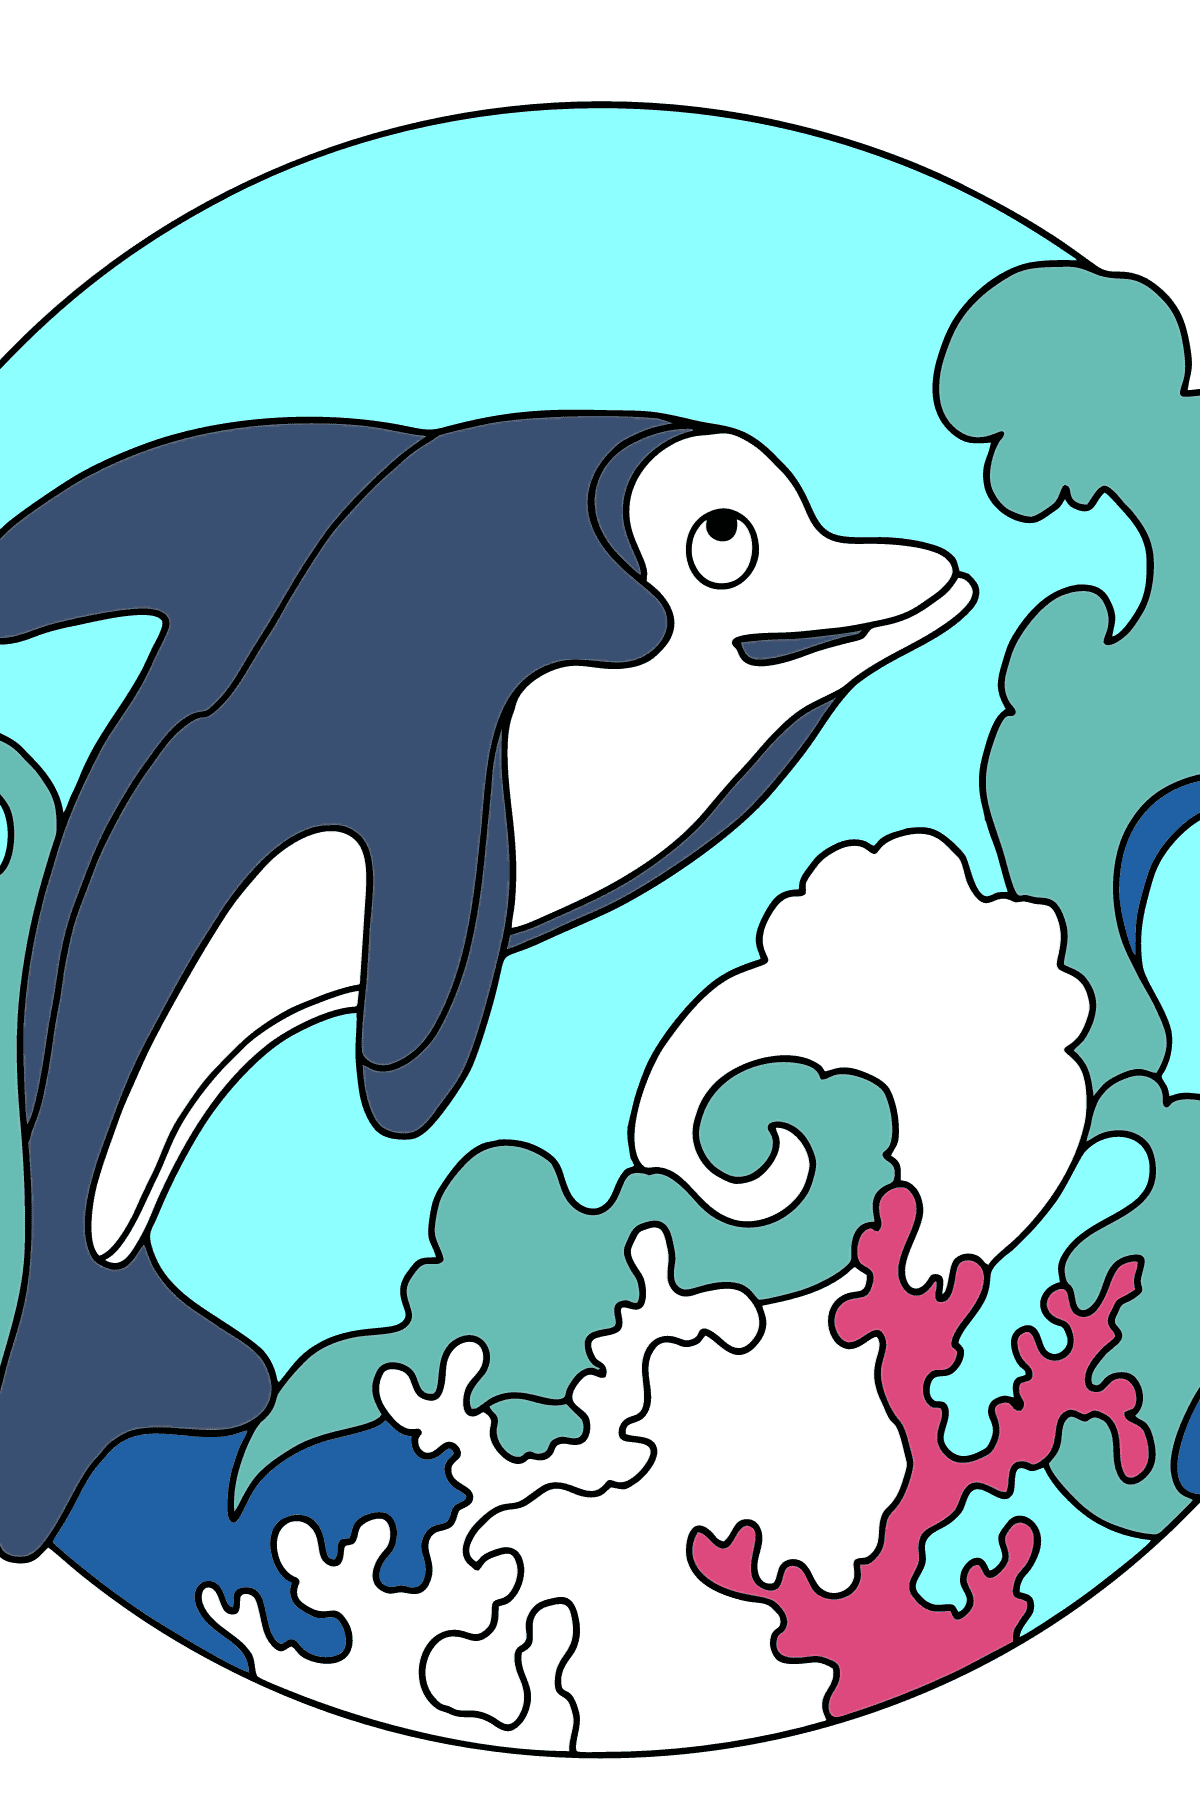 Dibujo para Colorear - El Delfín, un Animal Inteligente y Amistoso - Colorear para Niños